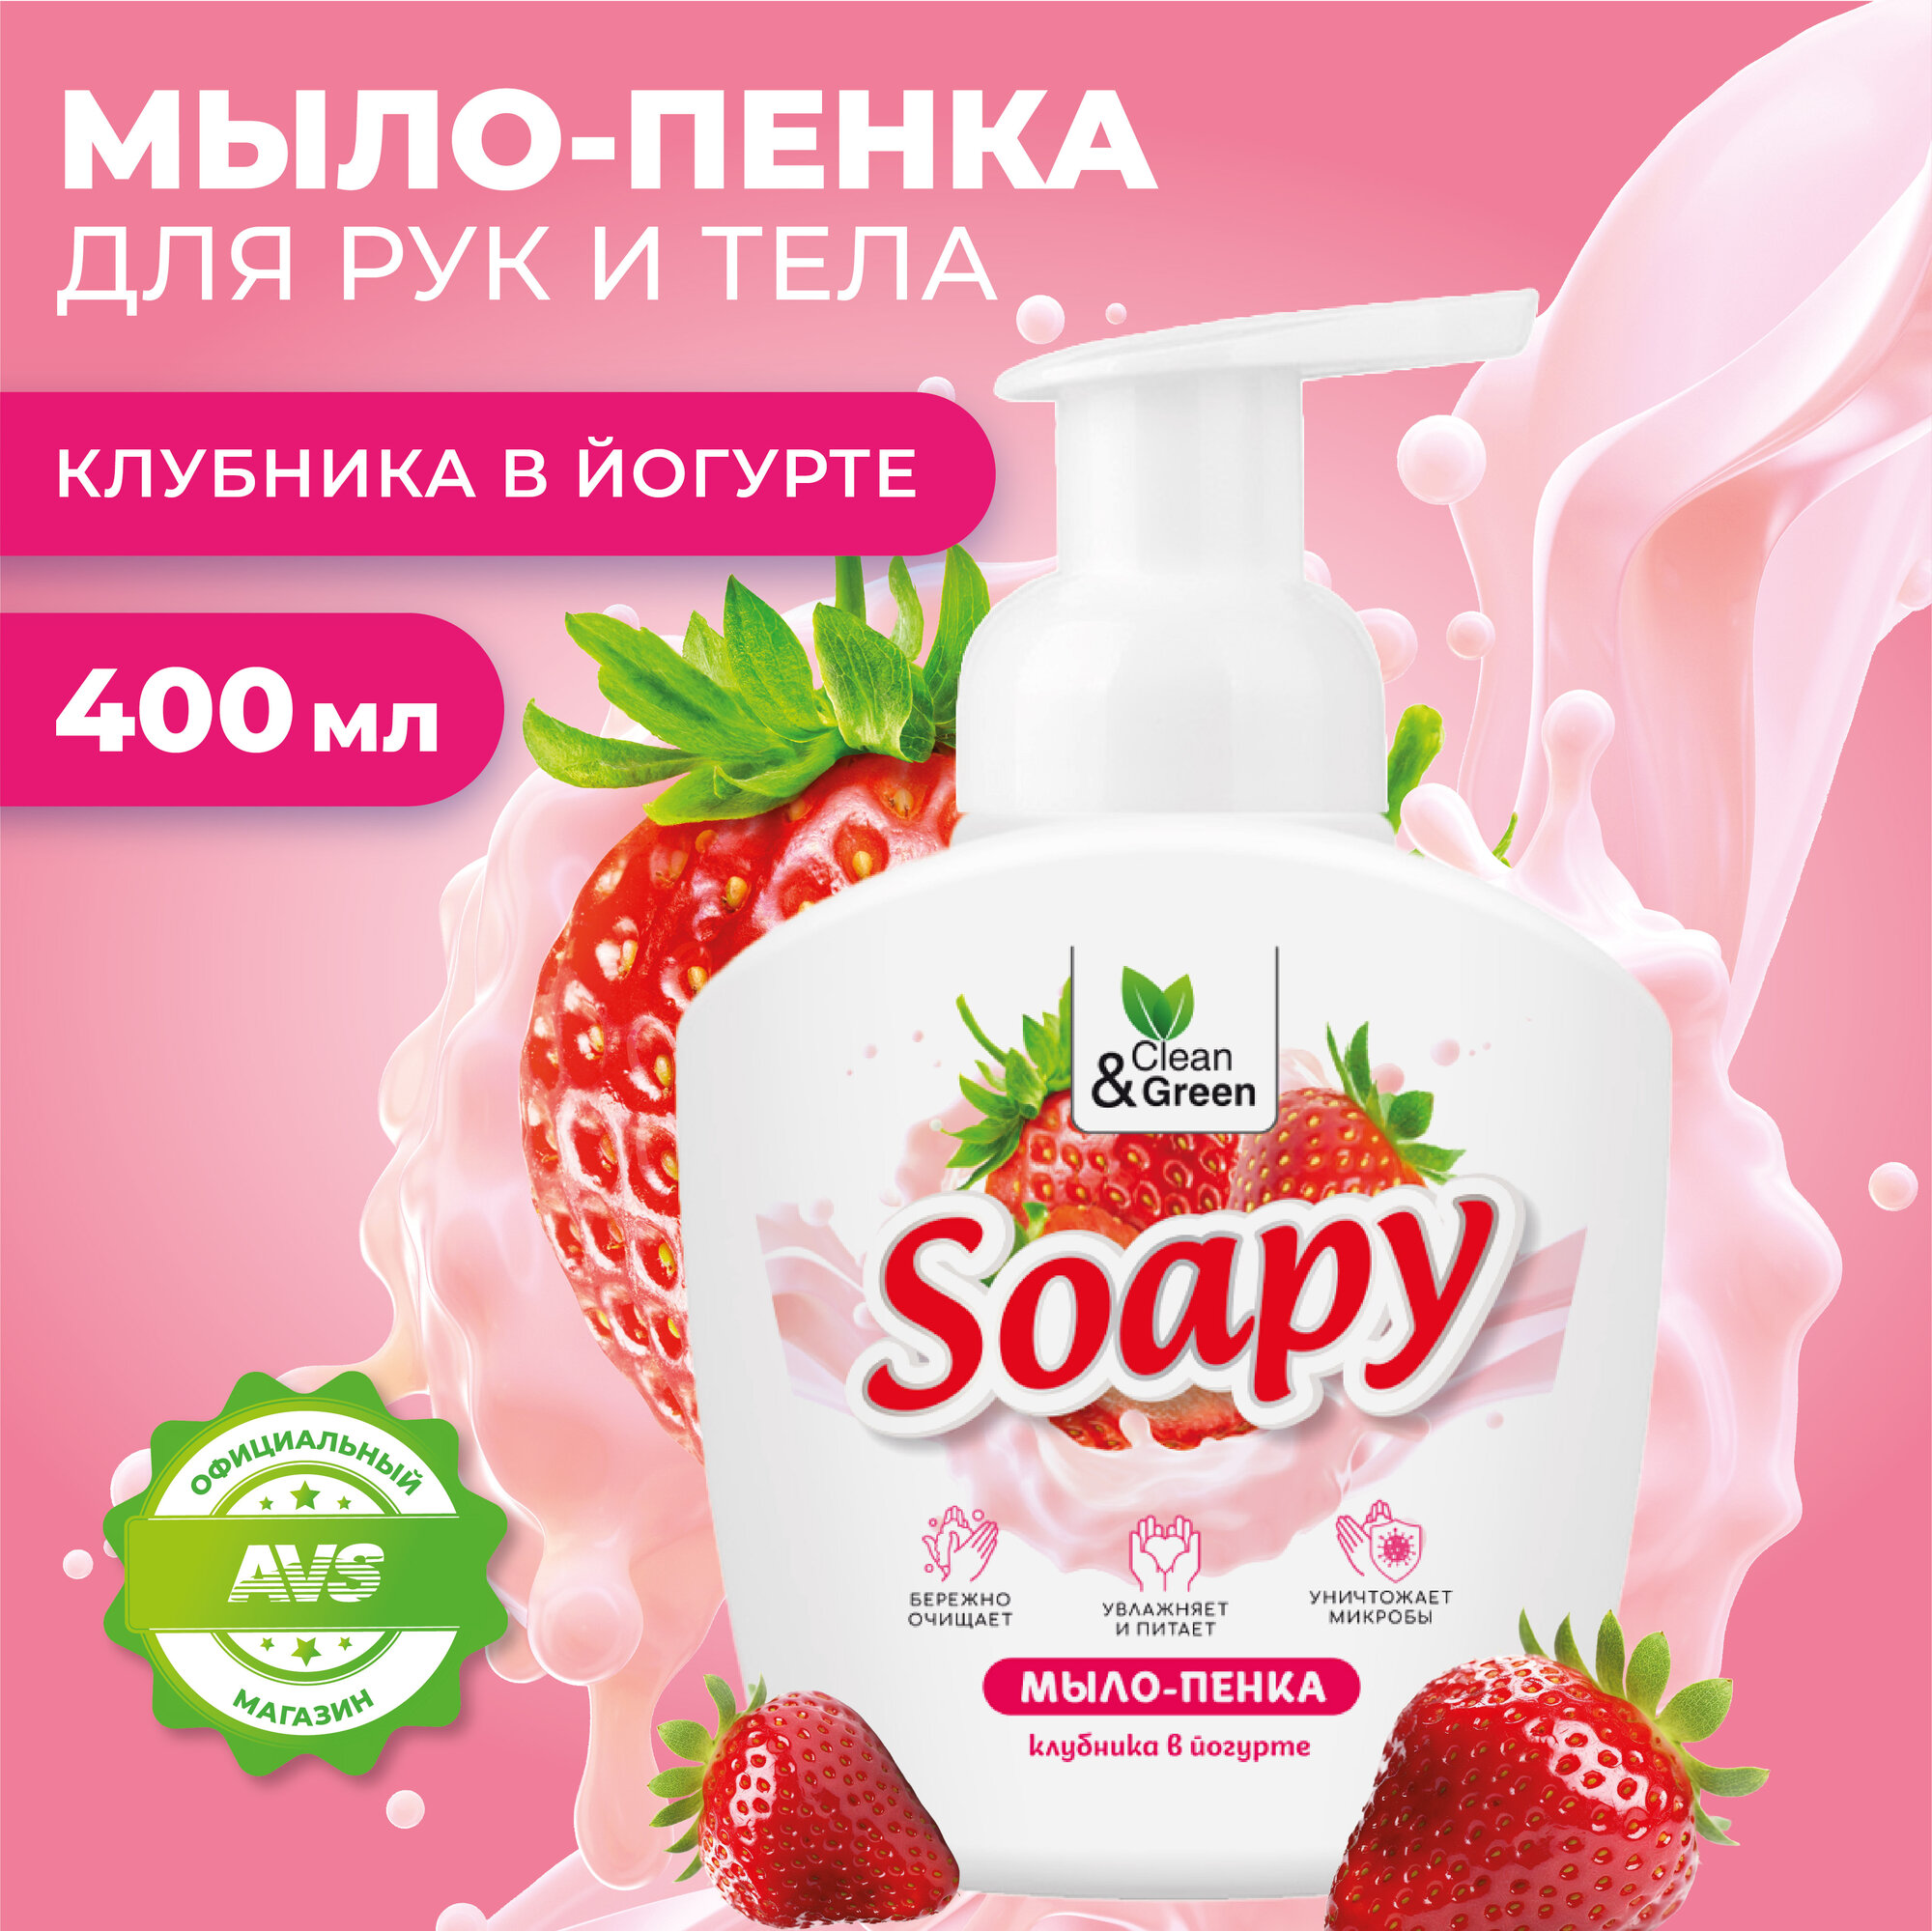 Жидкое мыло-пенка "Soapy" "Клубника в йогурте" пенный дозатор 400 мл